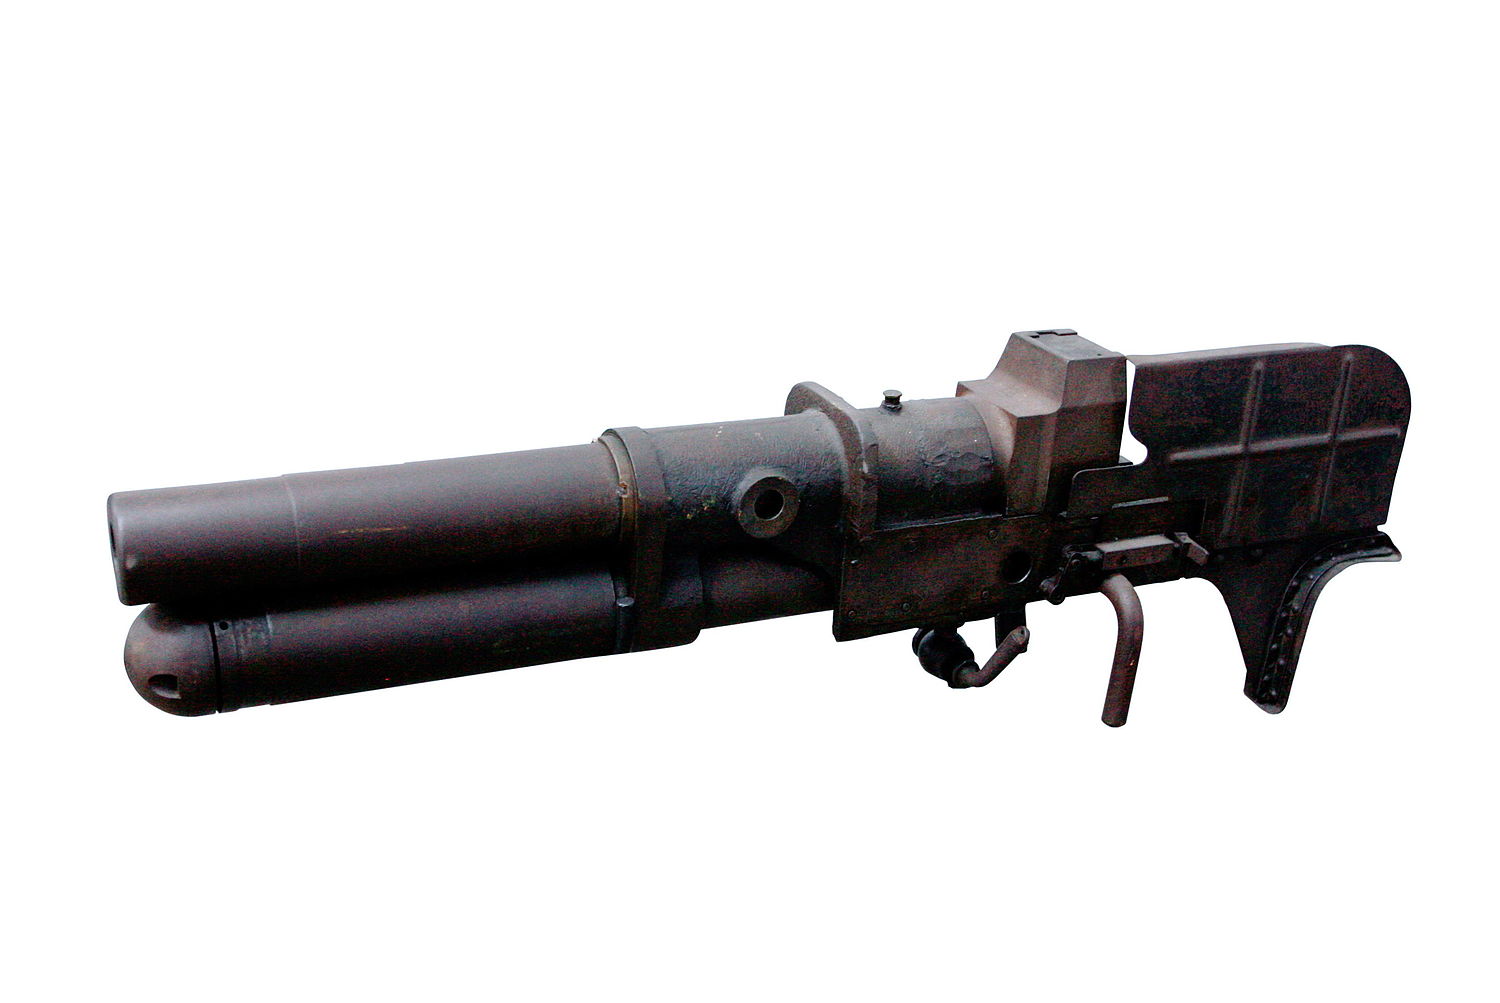 Canon d'infanterie Type 11 de 37 mm — Wikipédia